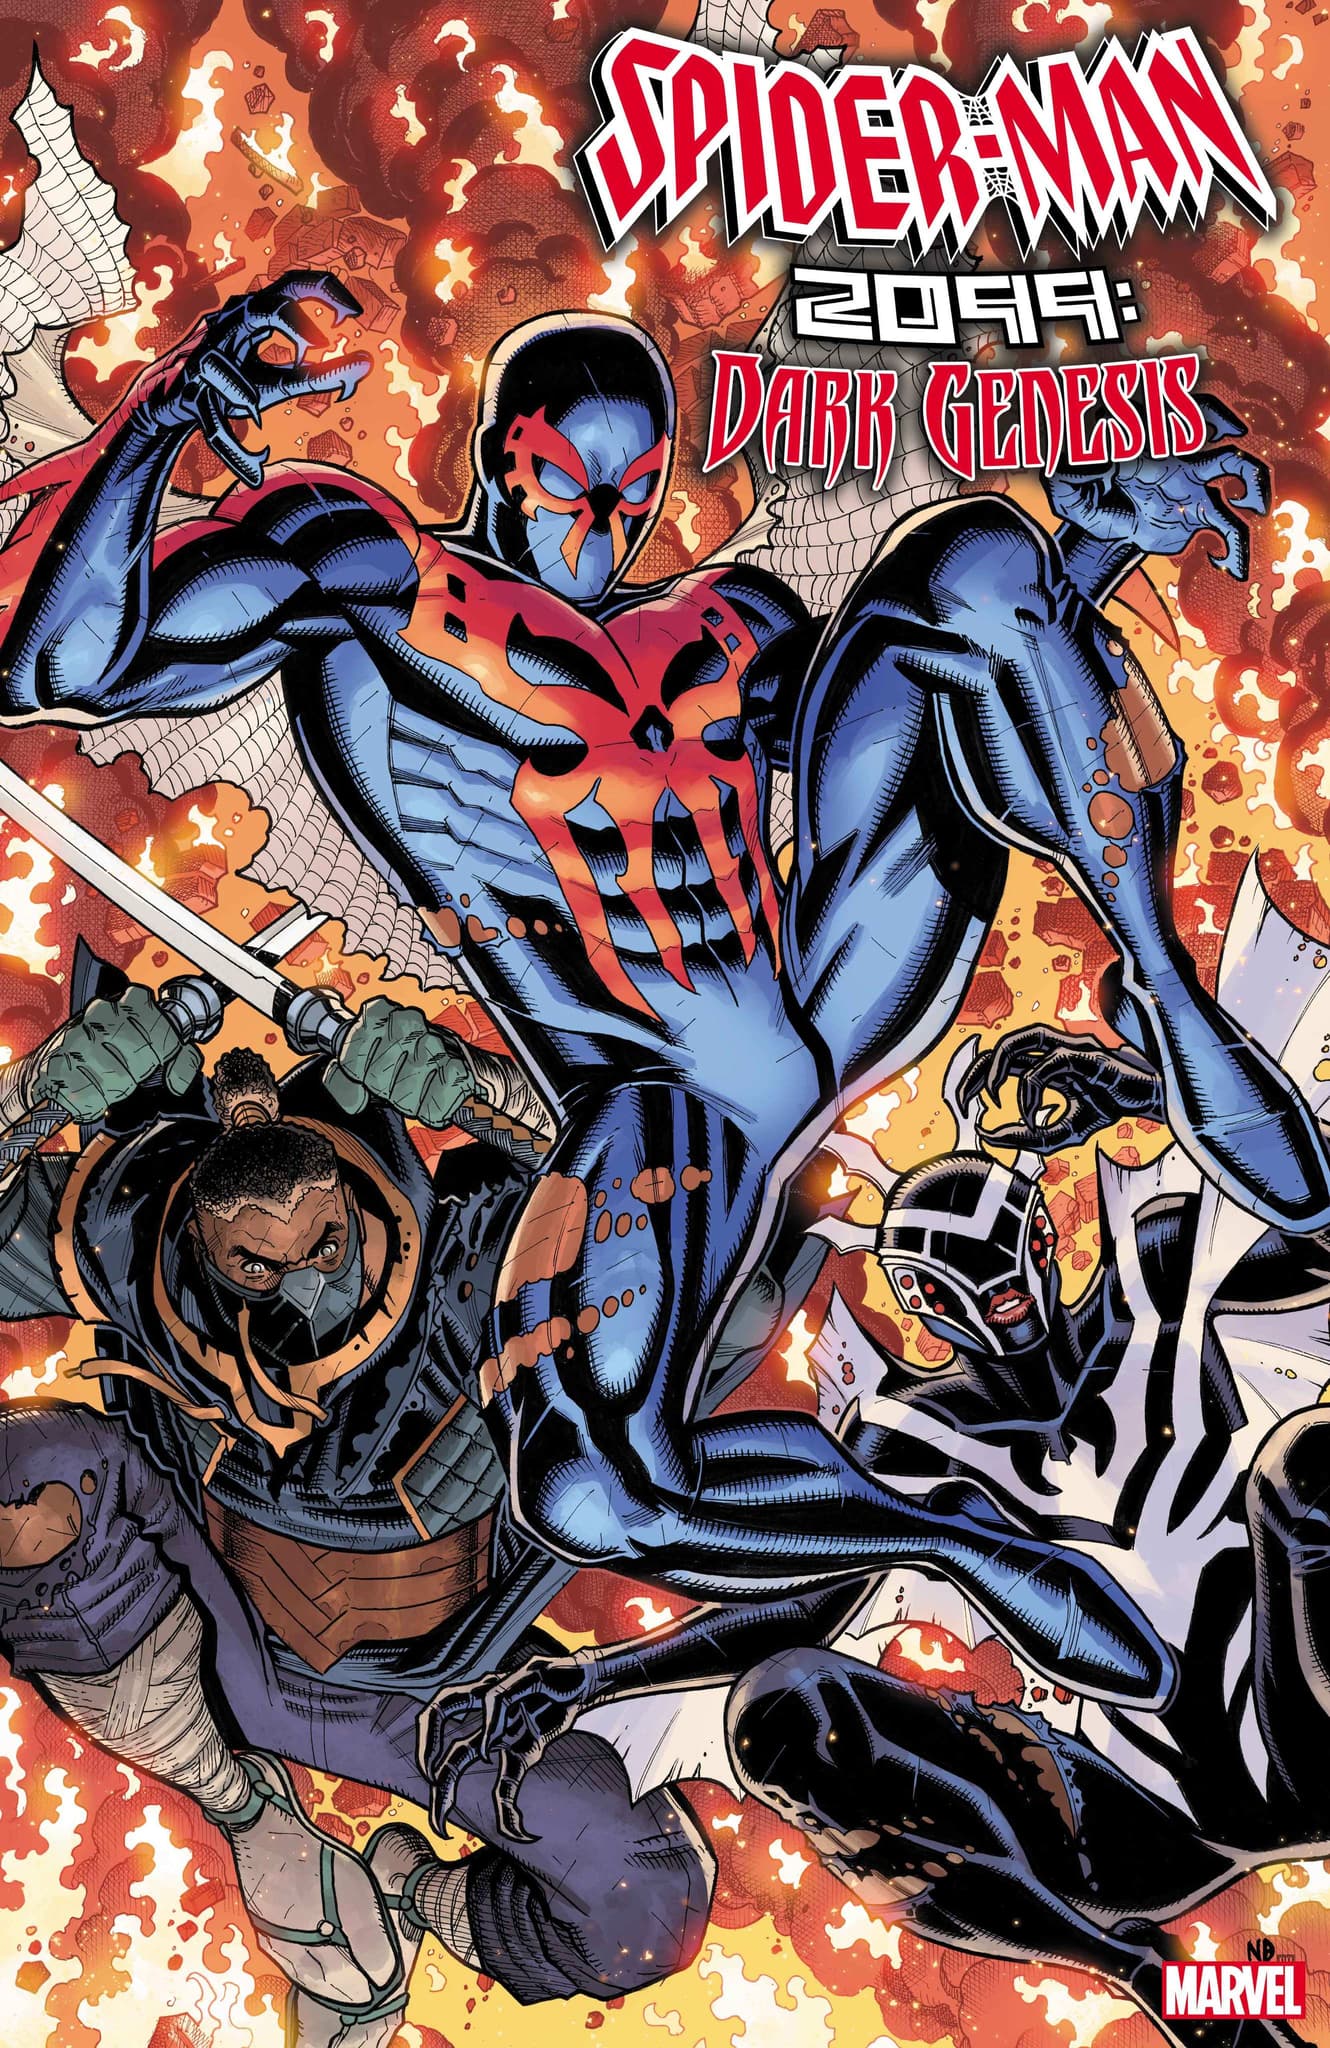 SPIDER-MAN 2099: DARK GENESIS #2 cover by Nick Bradshaw